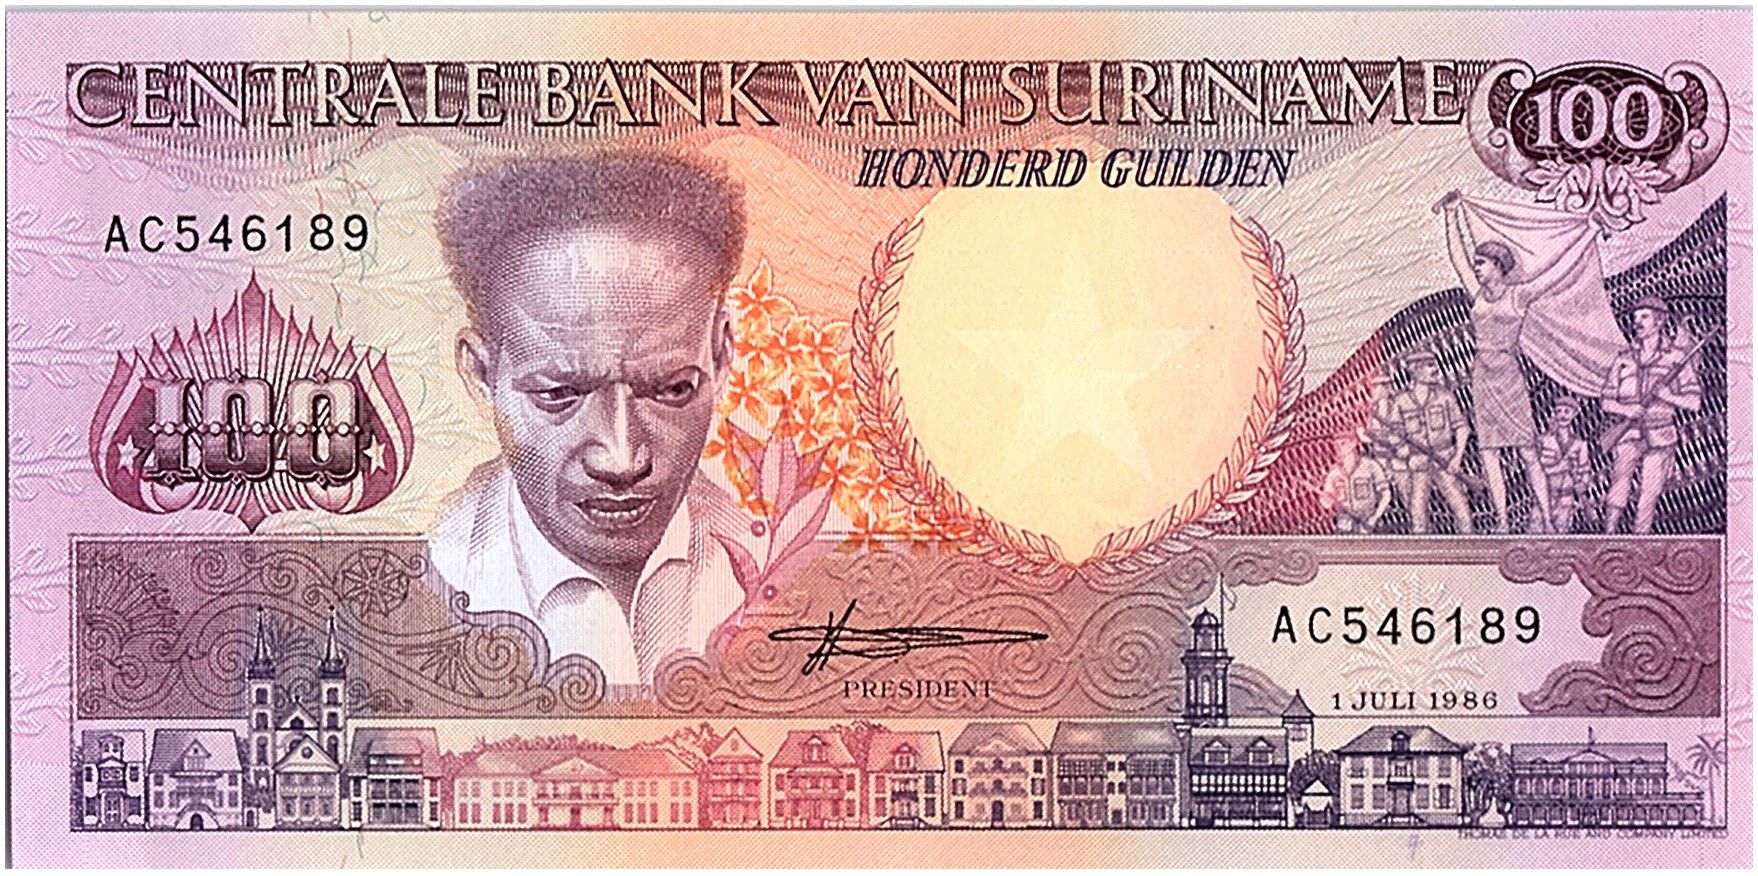 Details about   Suriname 1985 100 Gulden Banknote Rare Surinamese Paper Money South Am P#128 UNC 